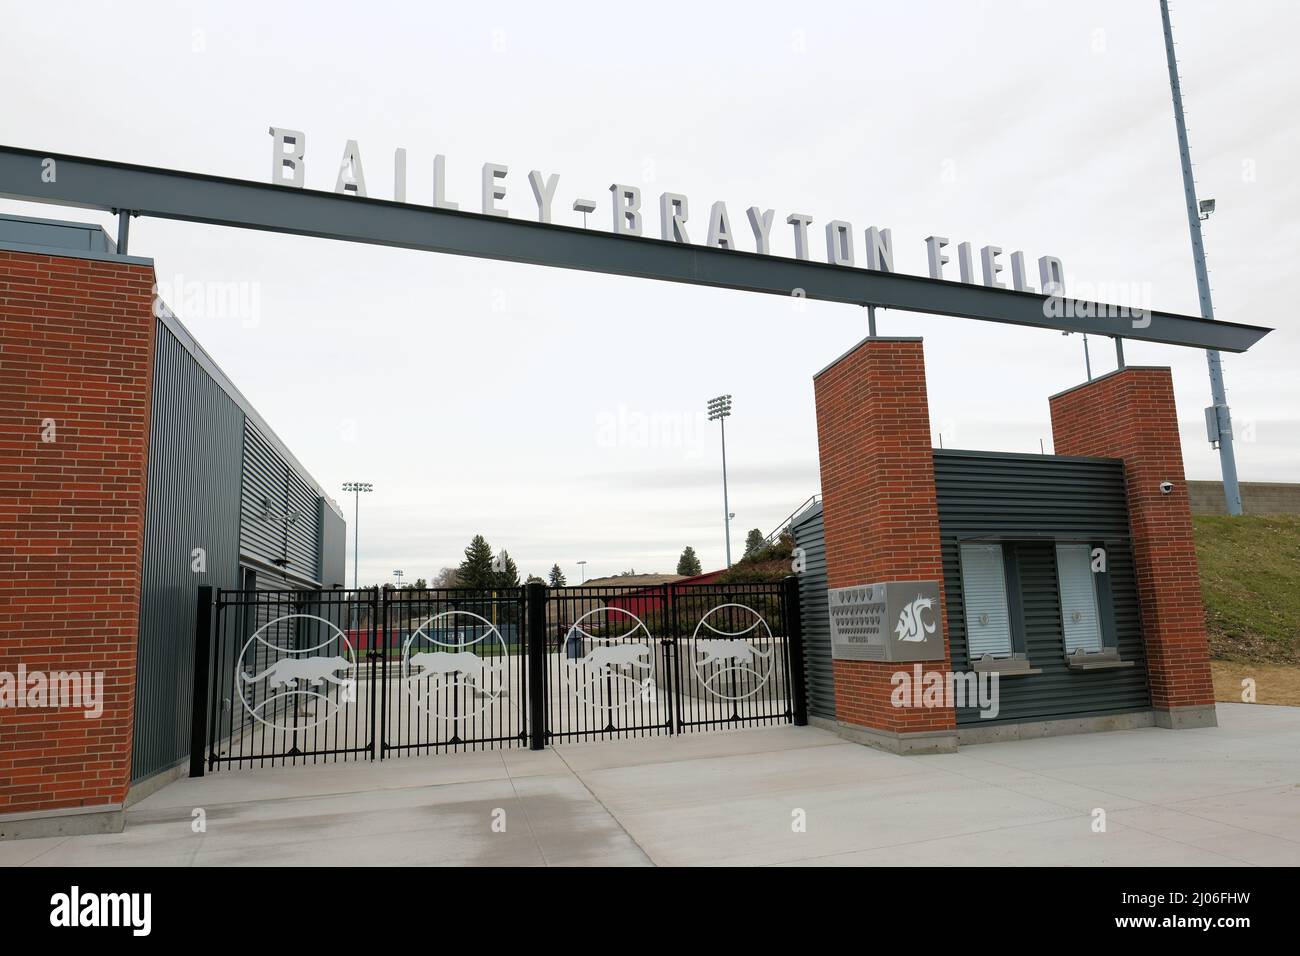 Bailey-Brayton Field, ein College-Baseballstadion auf dem Campus der Washington State University in Pullman, Washington; WSU Cougars; Cougar Athletics. Stockfoto